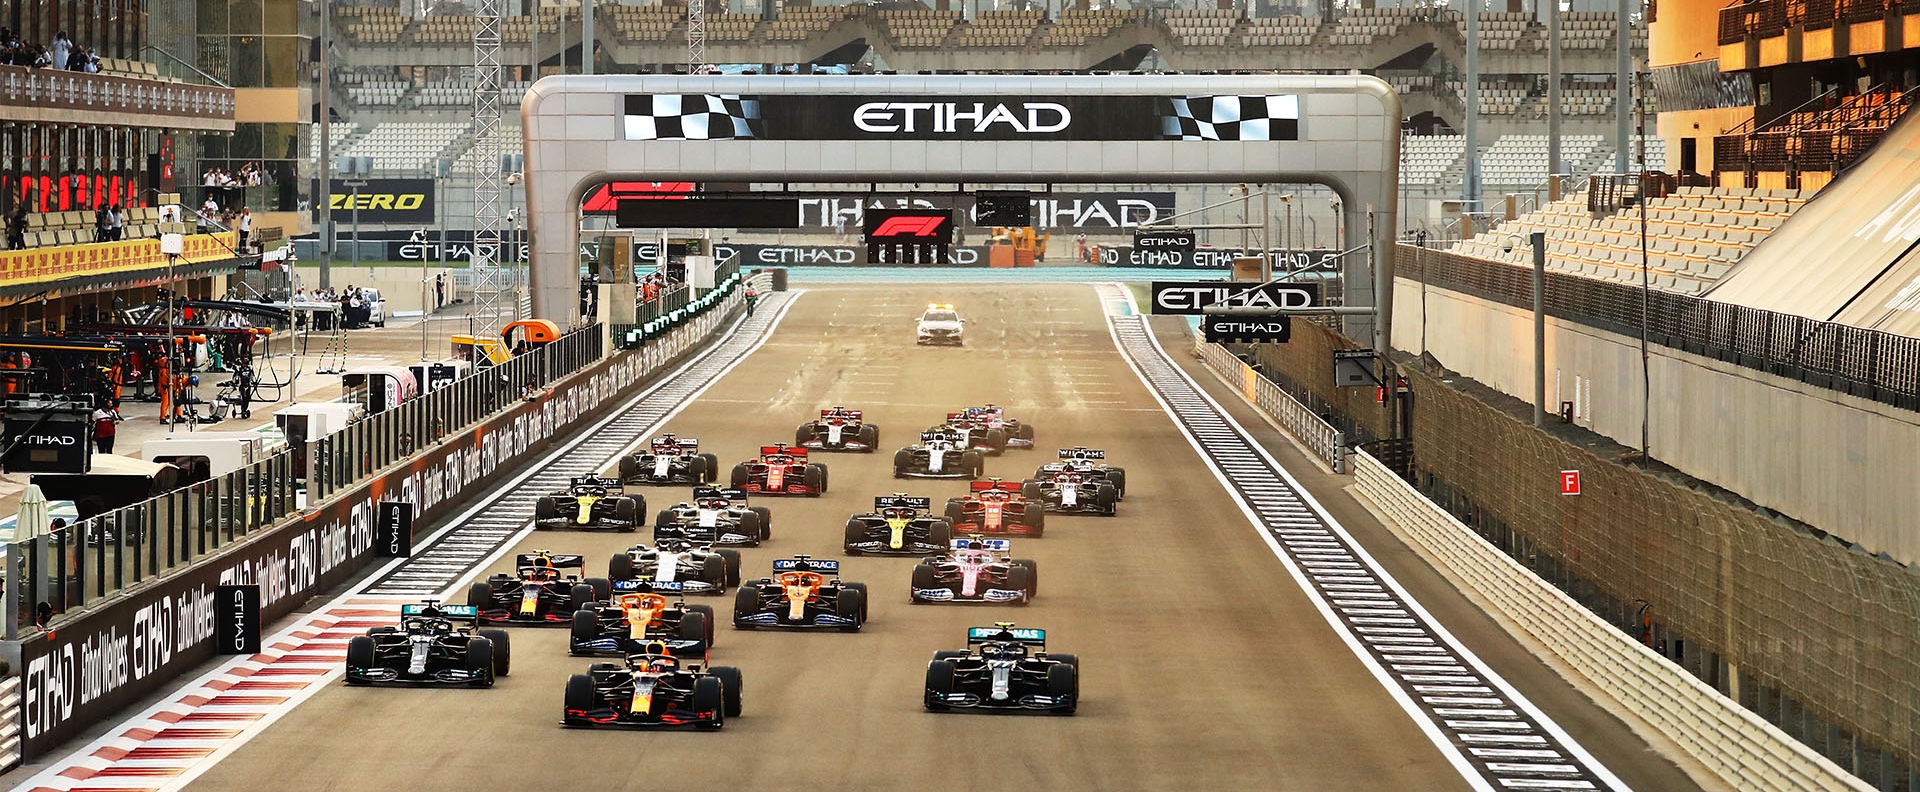 Jadwal dan Preview GP Abu Dhabi: Penentuan Runner-up dan Balapan Pamungkas Vettel dan Ricciardo